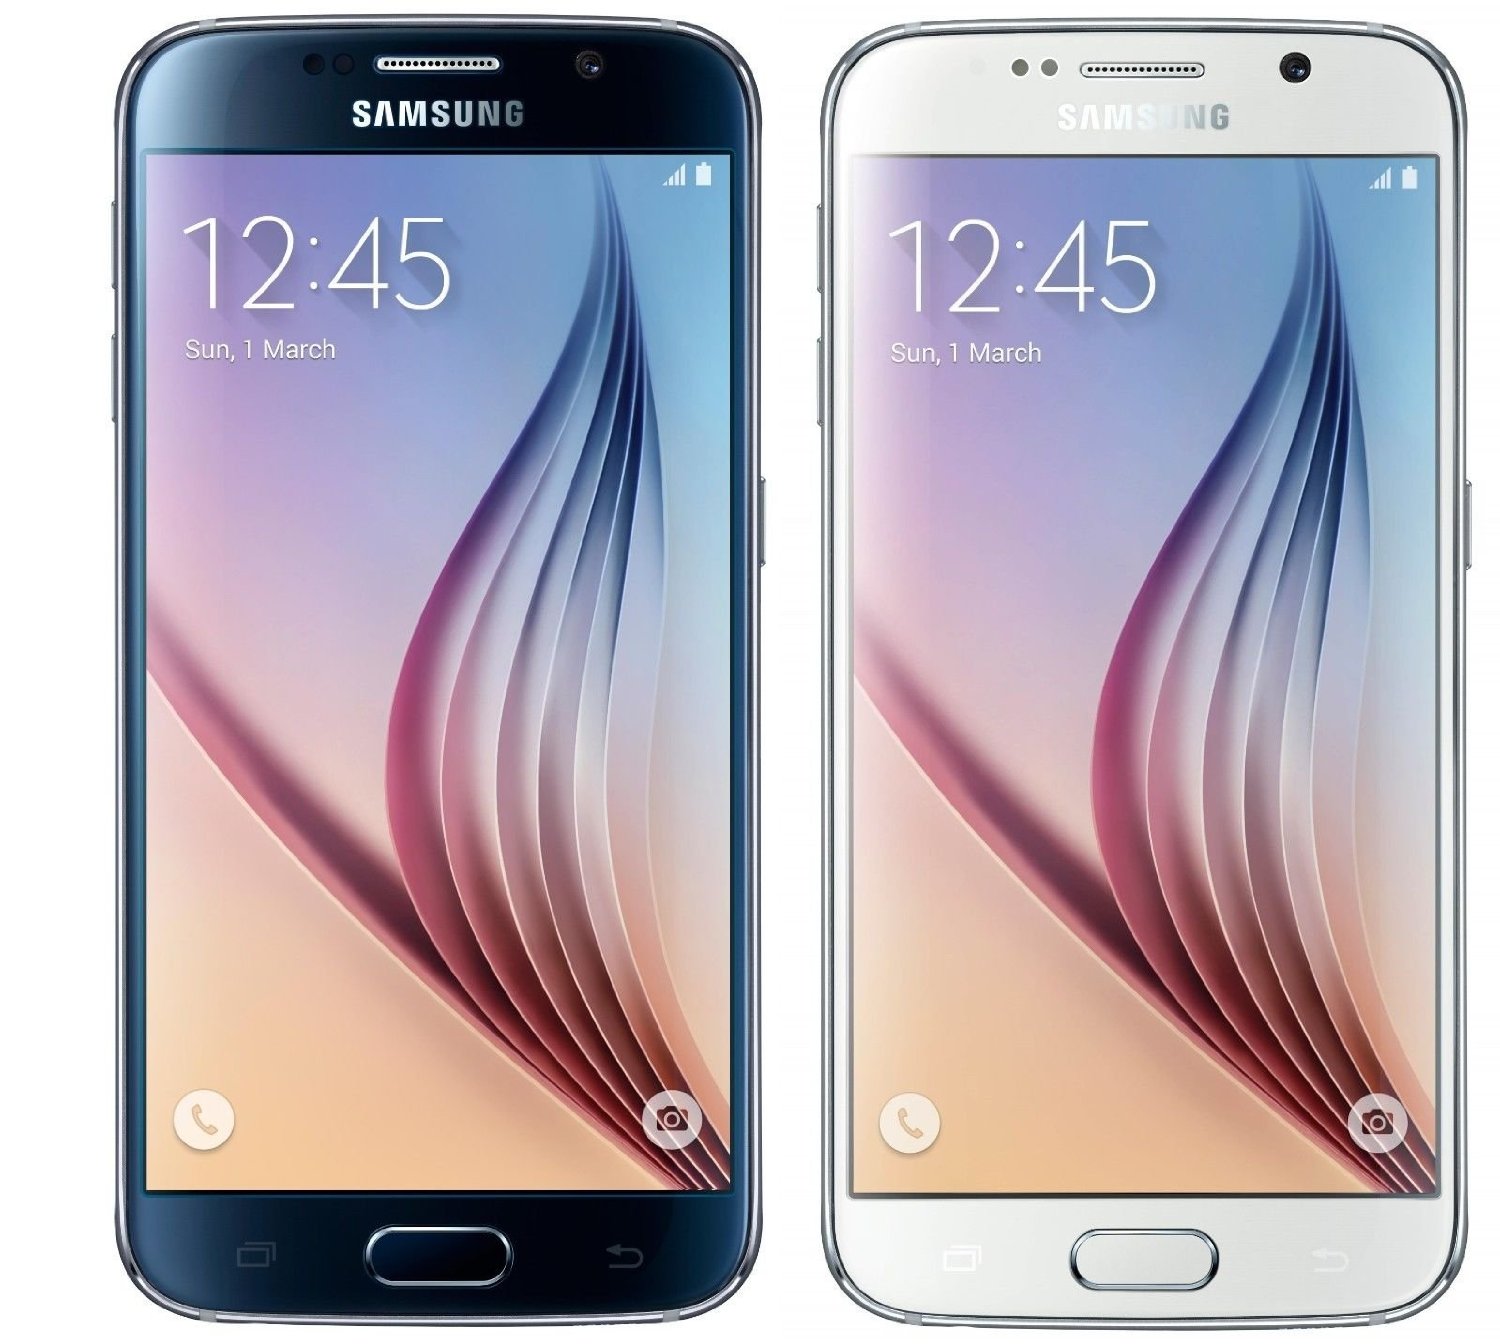 Reklaminė Samsung "Galaxy S6" ir "Galaxy S6 Edge"  telefonų nuotruka.